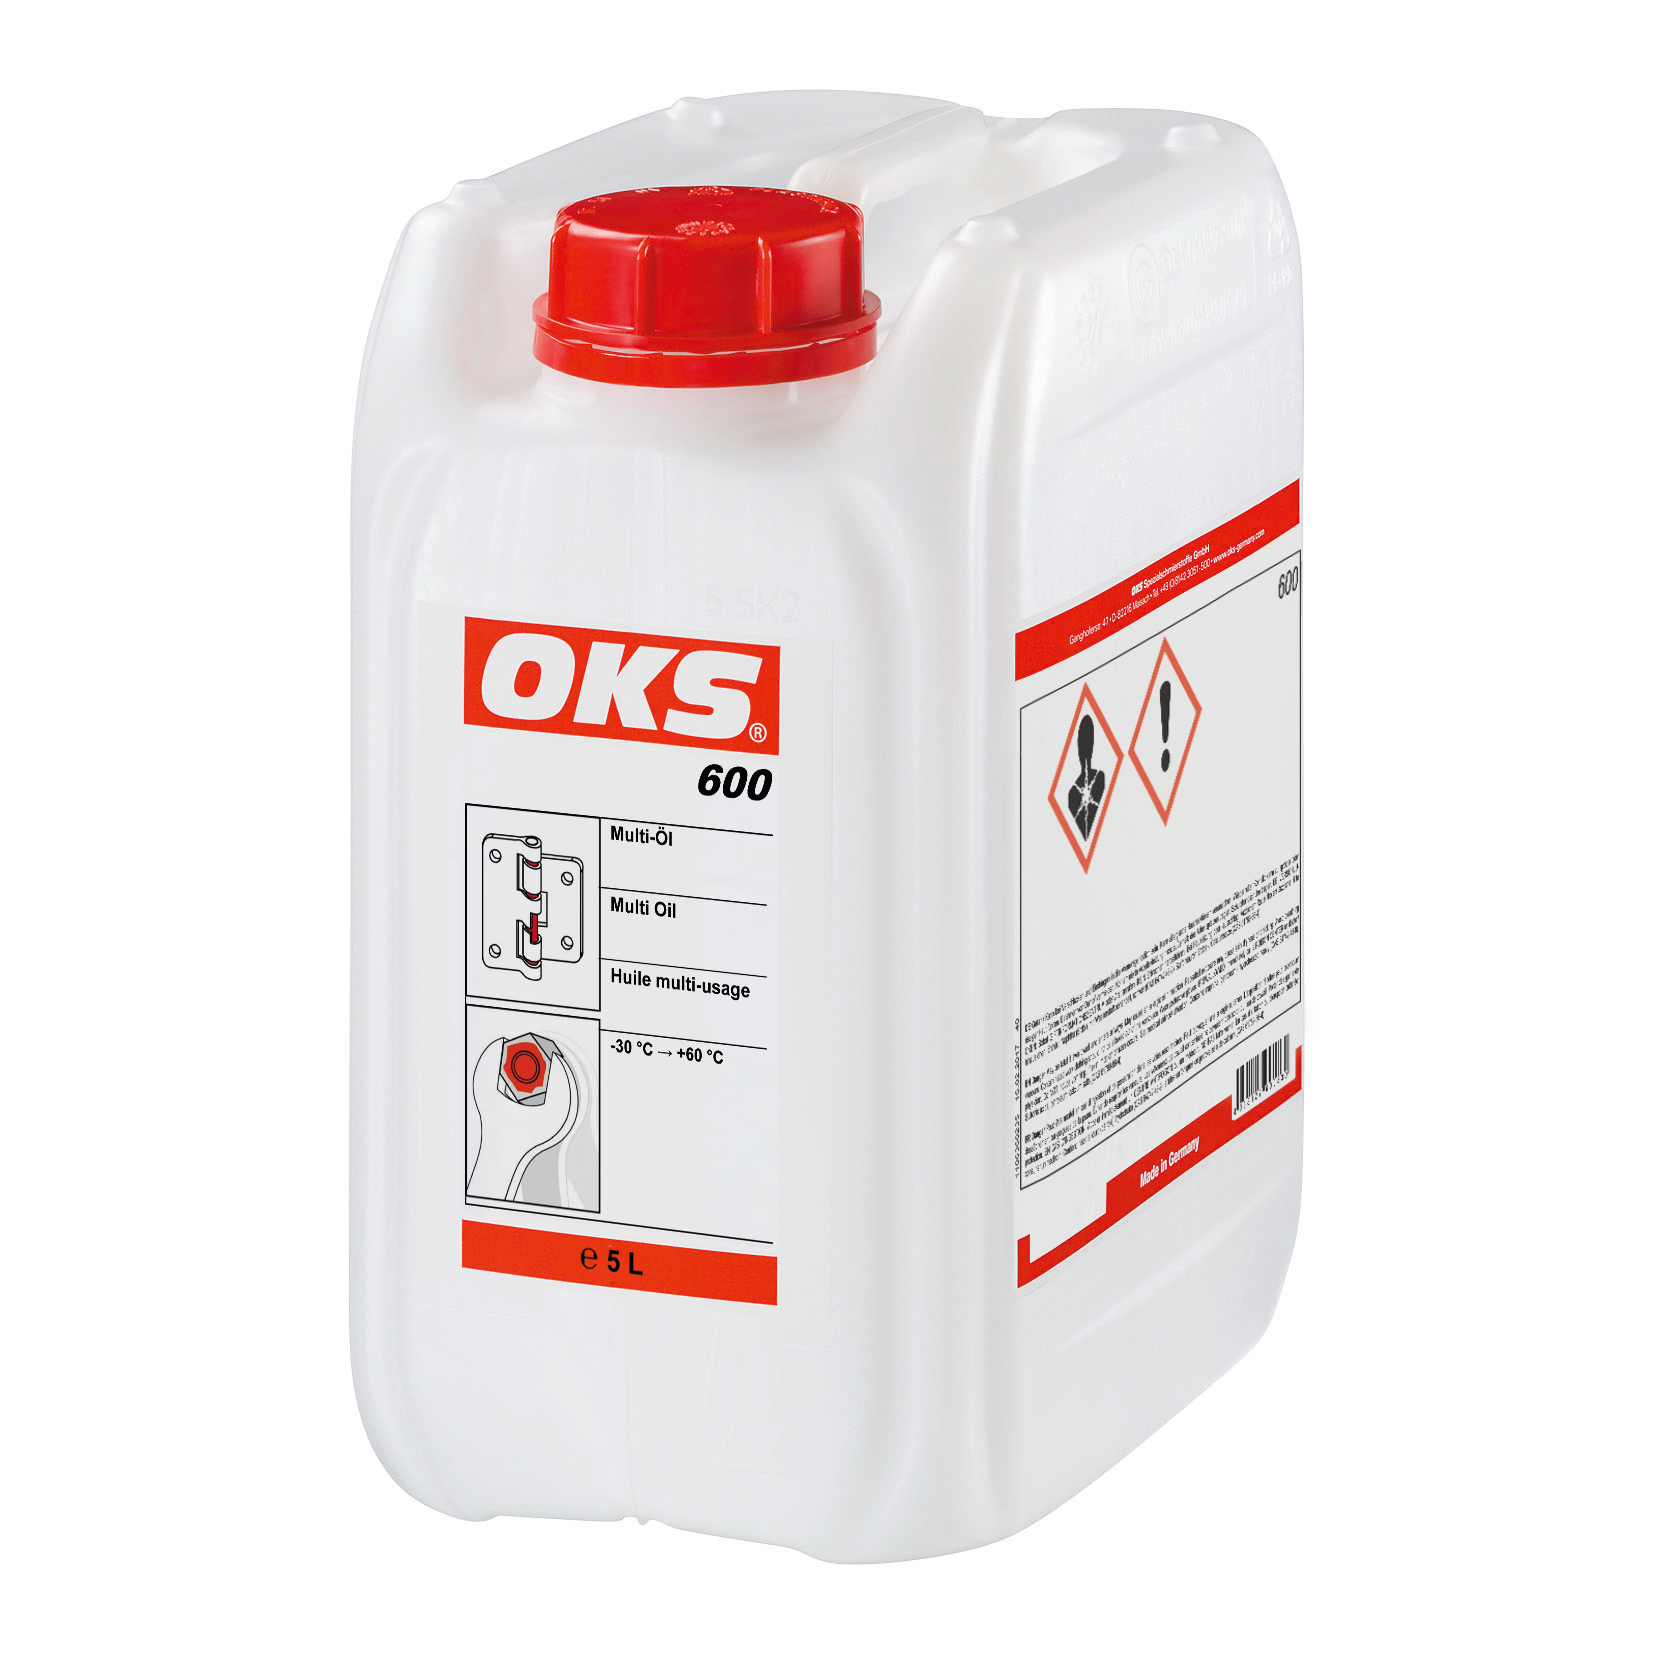 OKS0600-5 Dunvloeibare, lichtgekleurde multi-olie voor veelzijdige toepassingen in het industrieel onderhoud en in werkplaatsen.